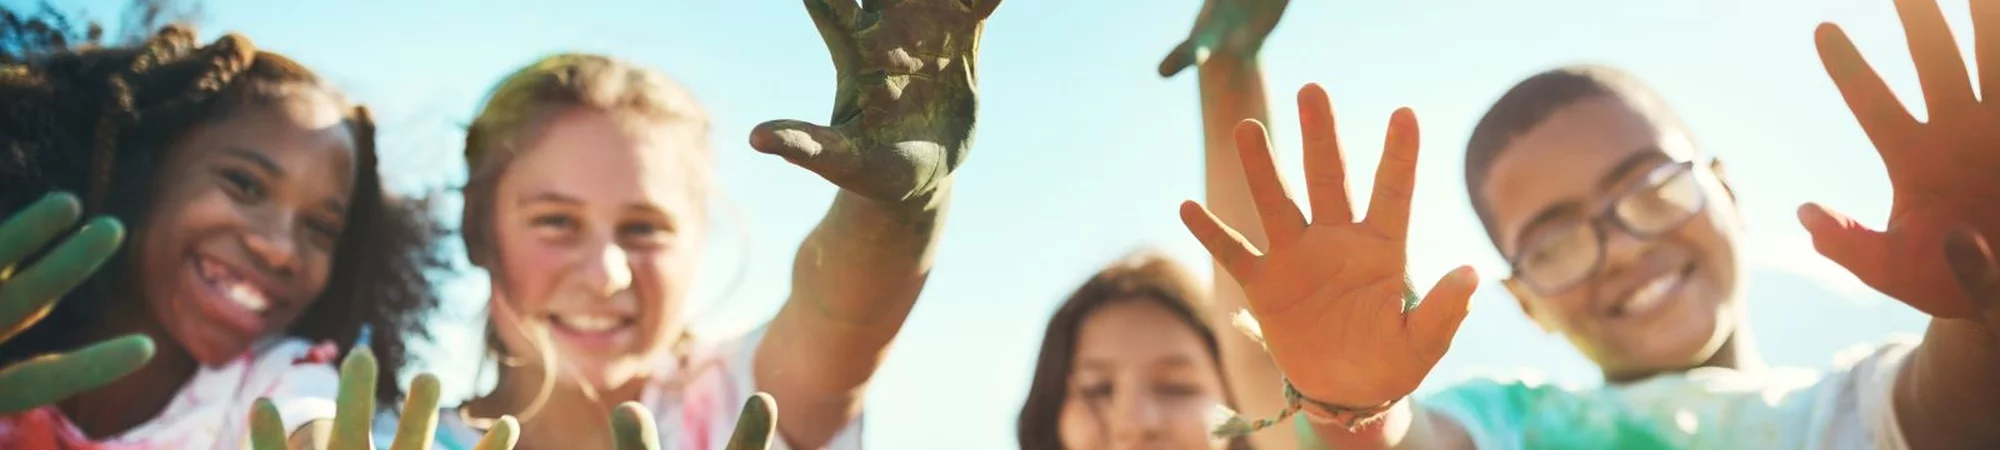 Kinder strecken uns Ihre Hände entgegen - Förderfonds Kunst und Kultur der Stiftung Bildung